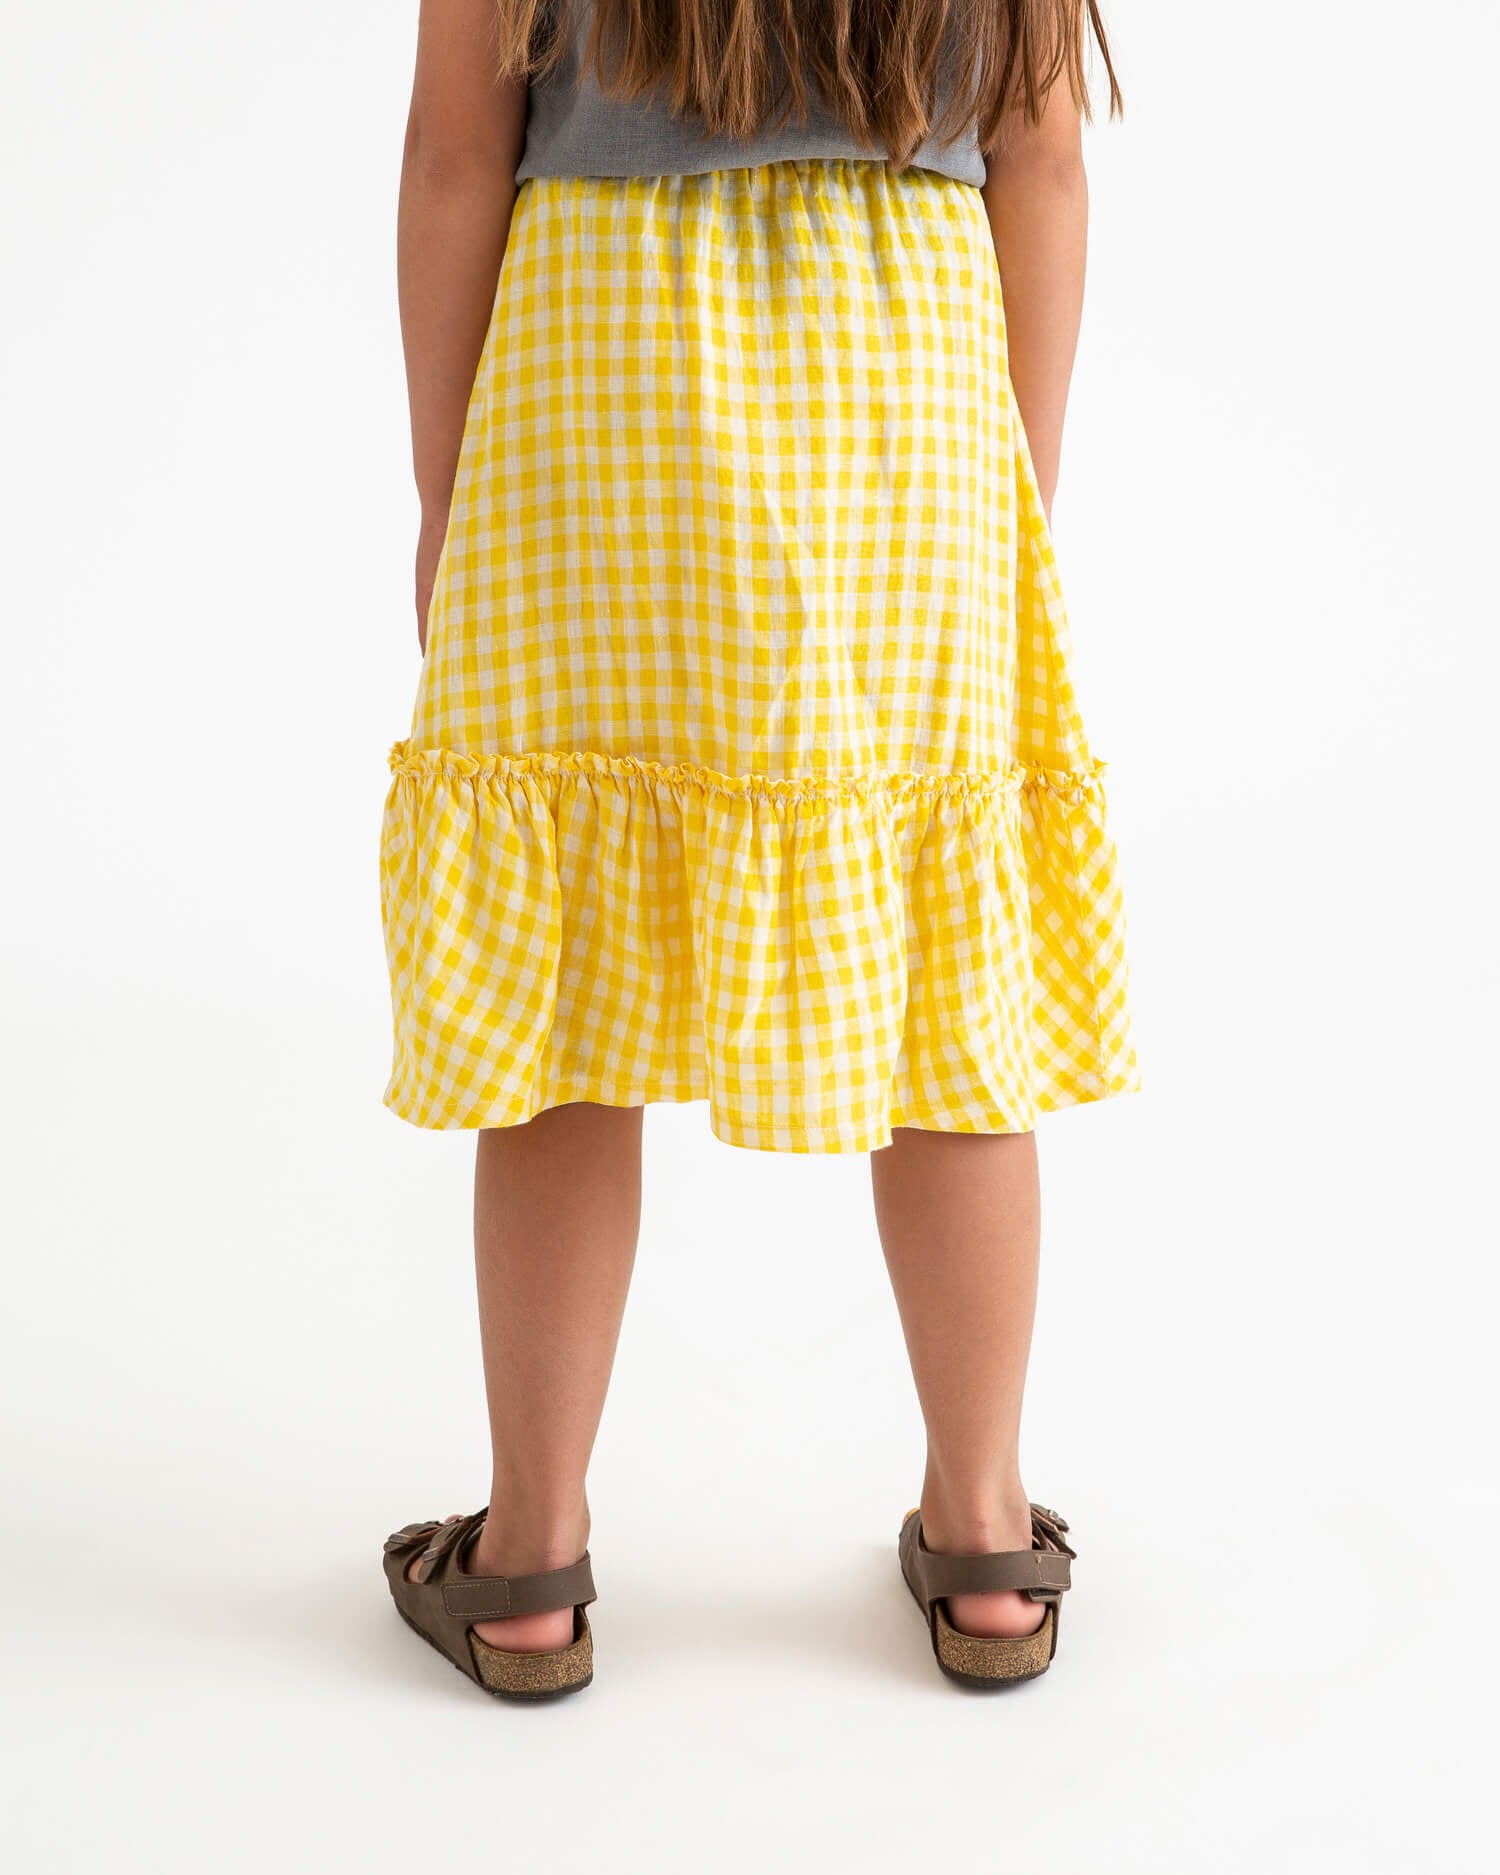 Ruffled Skirt yellow gingham